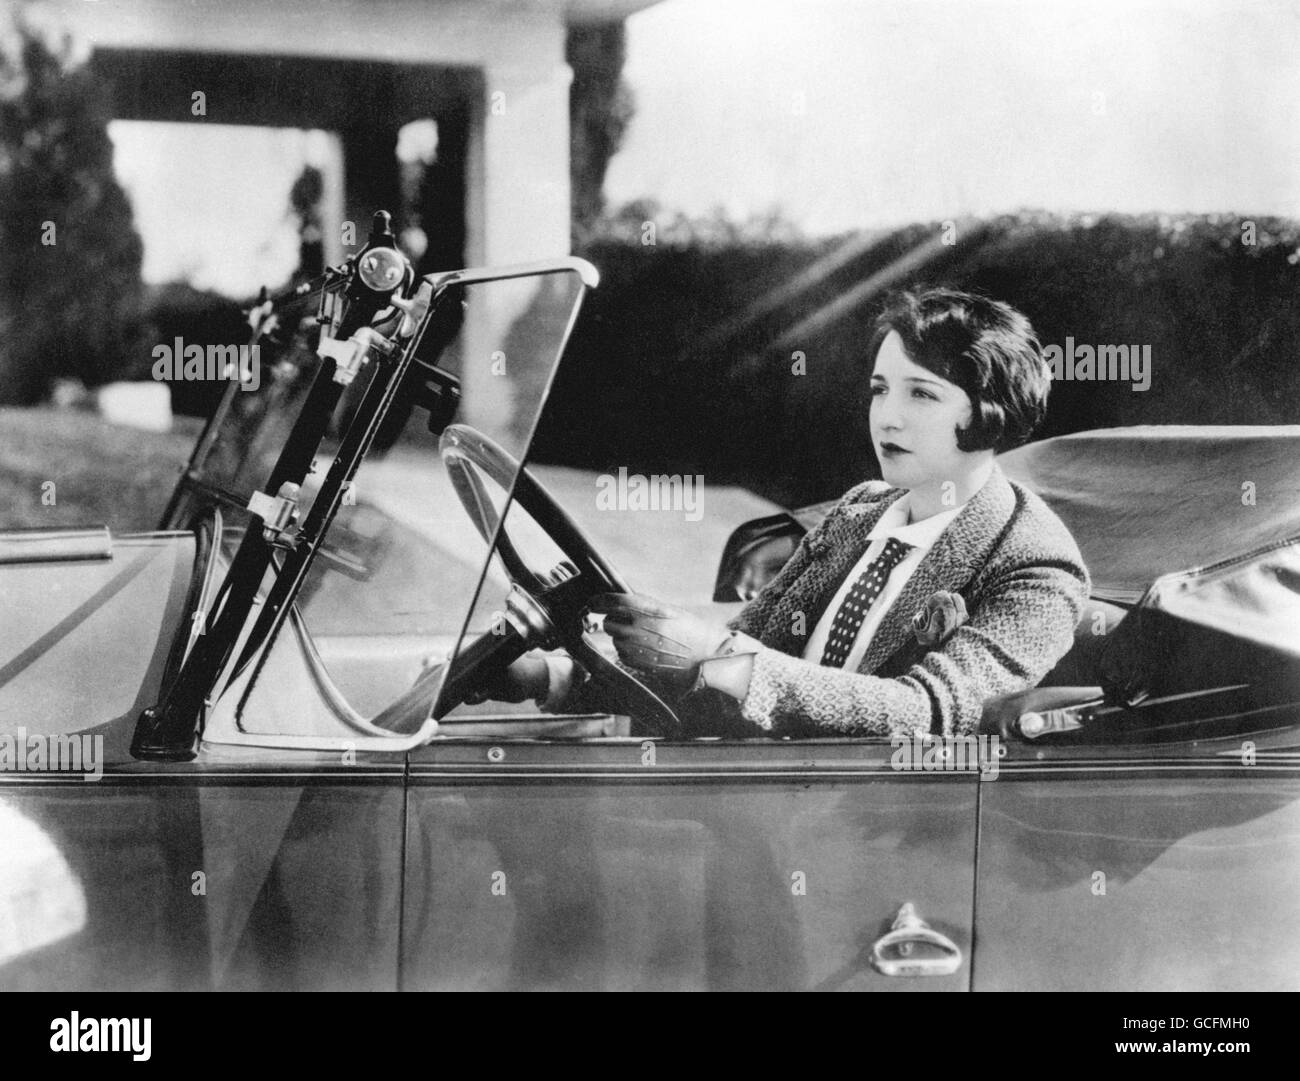 Films silencieux - Bebe Daniels - Hollywood.Bebe Daniels, star de cinéma américaine silencieuse, au volant de sa voiture. Banque D'Images